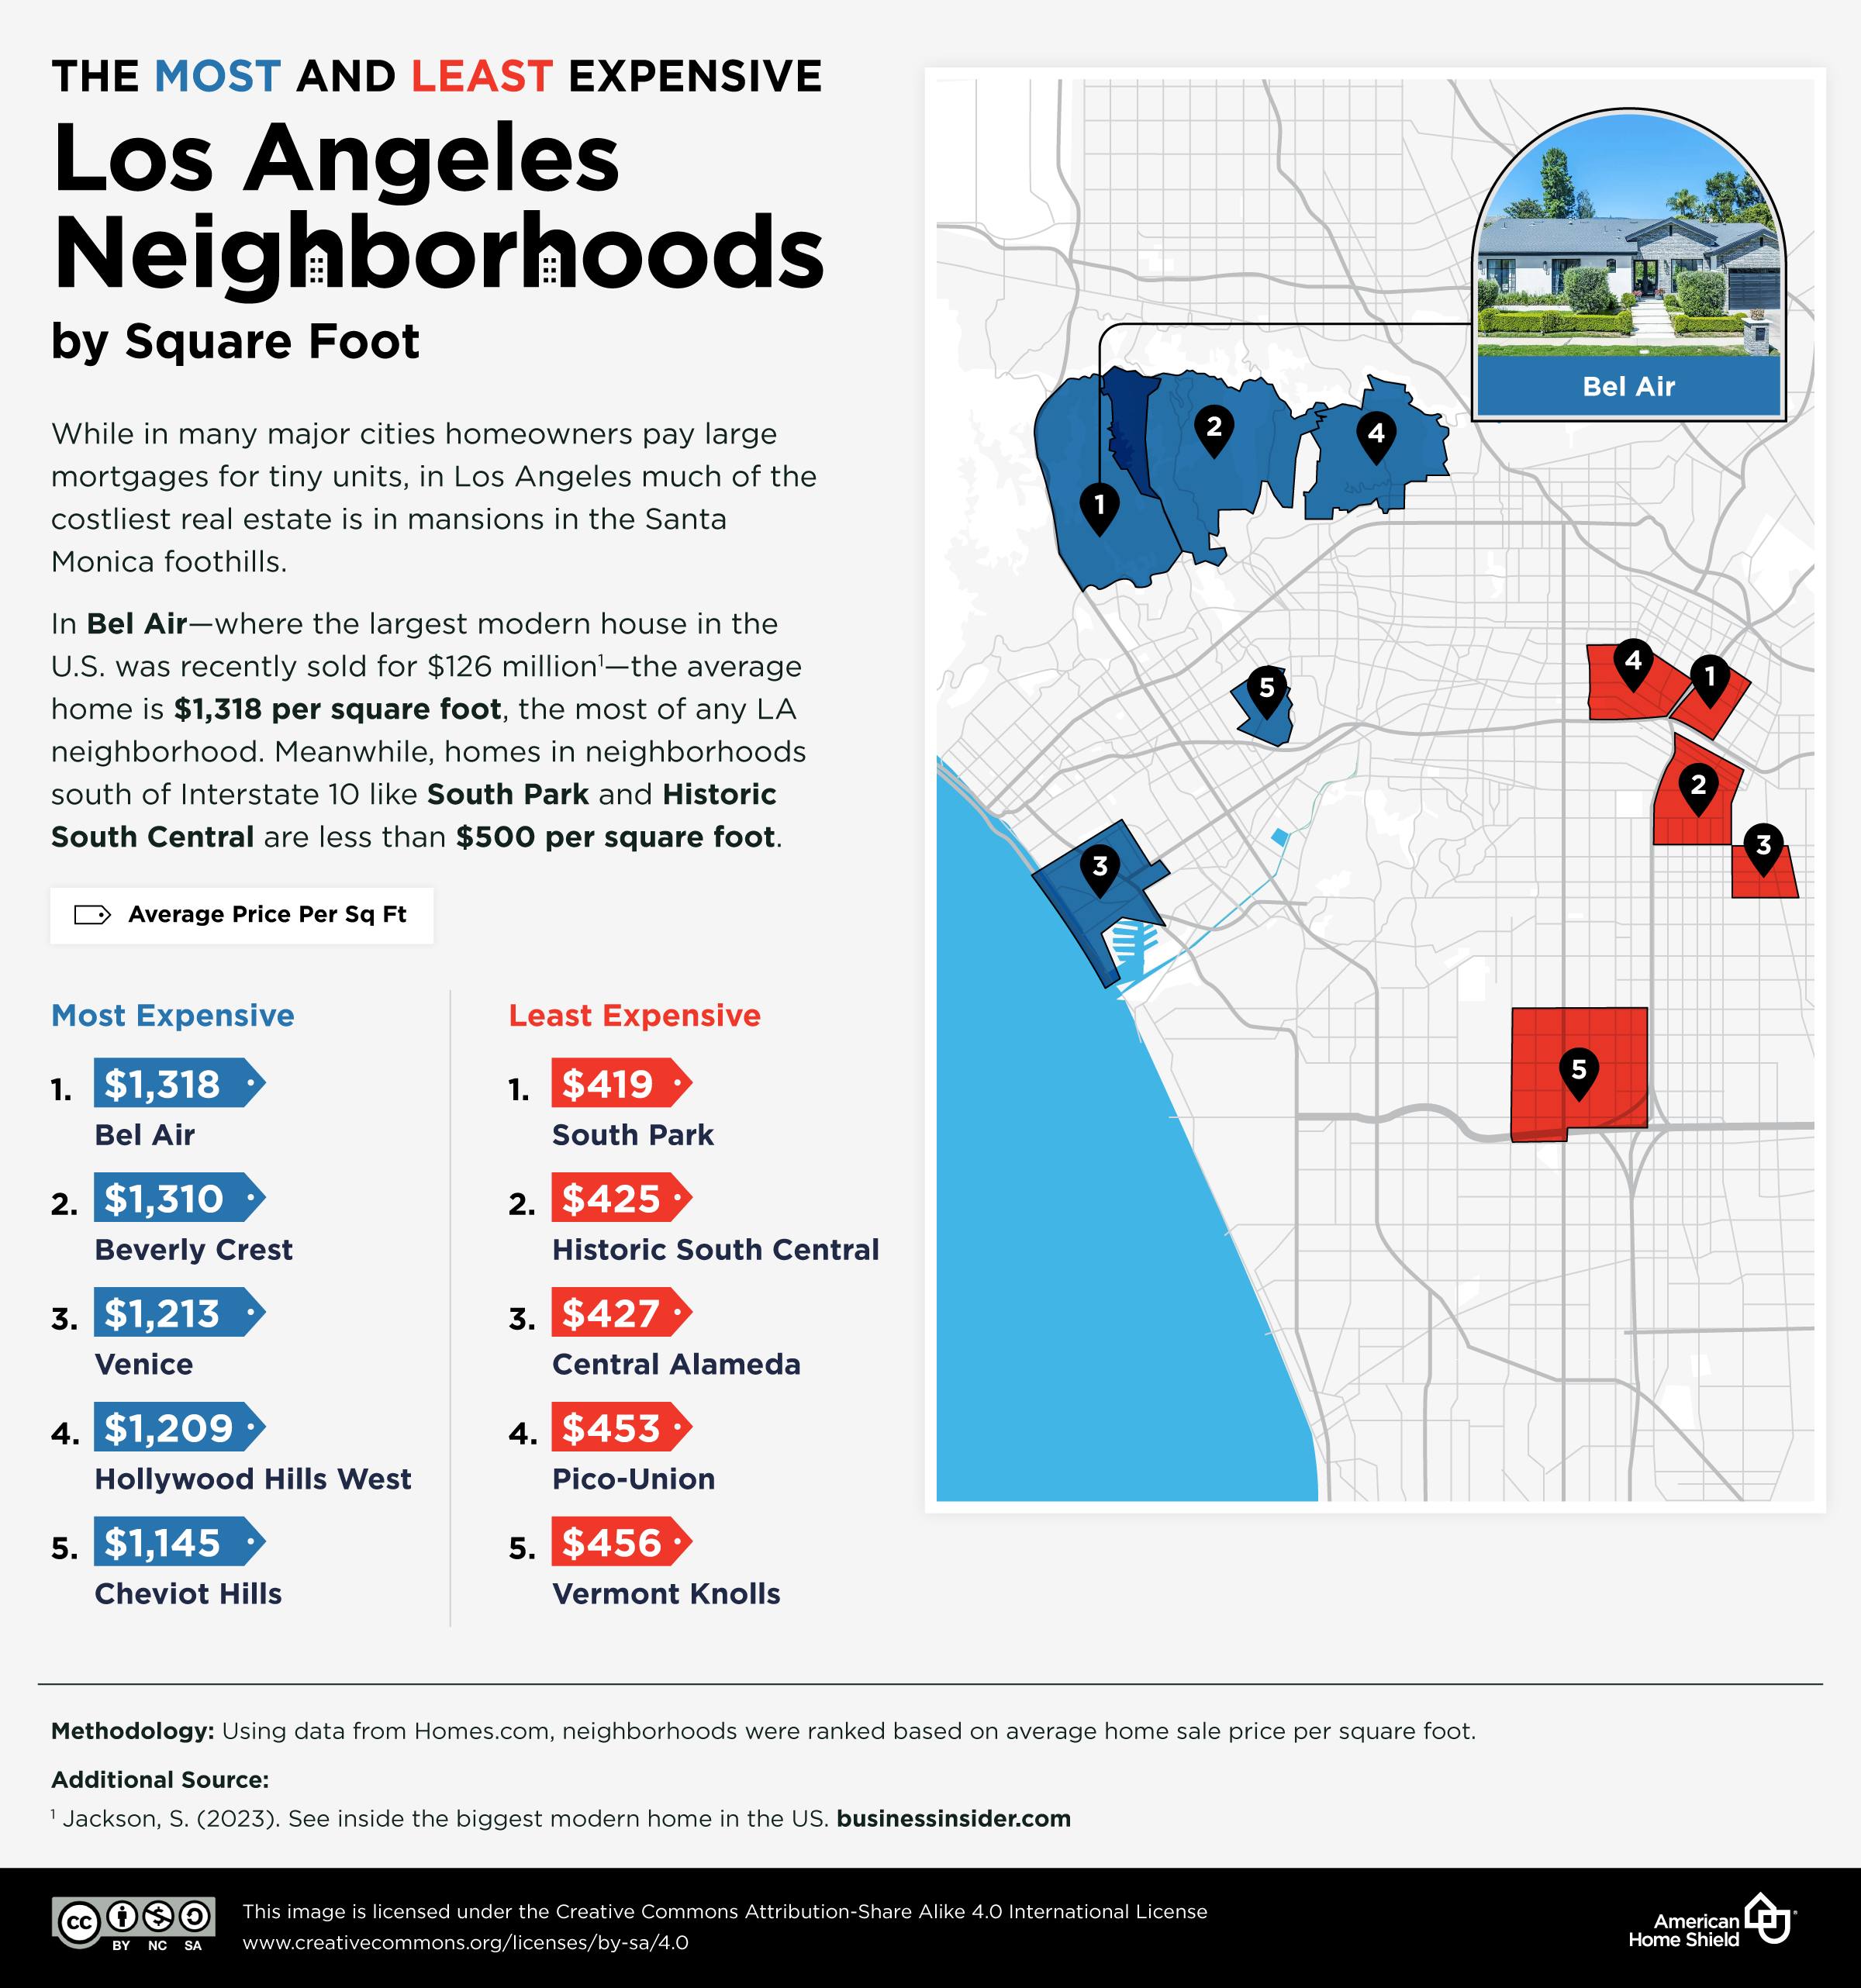 每平方英尺最便宜的洛杉矶社区.